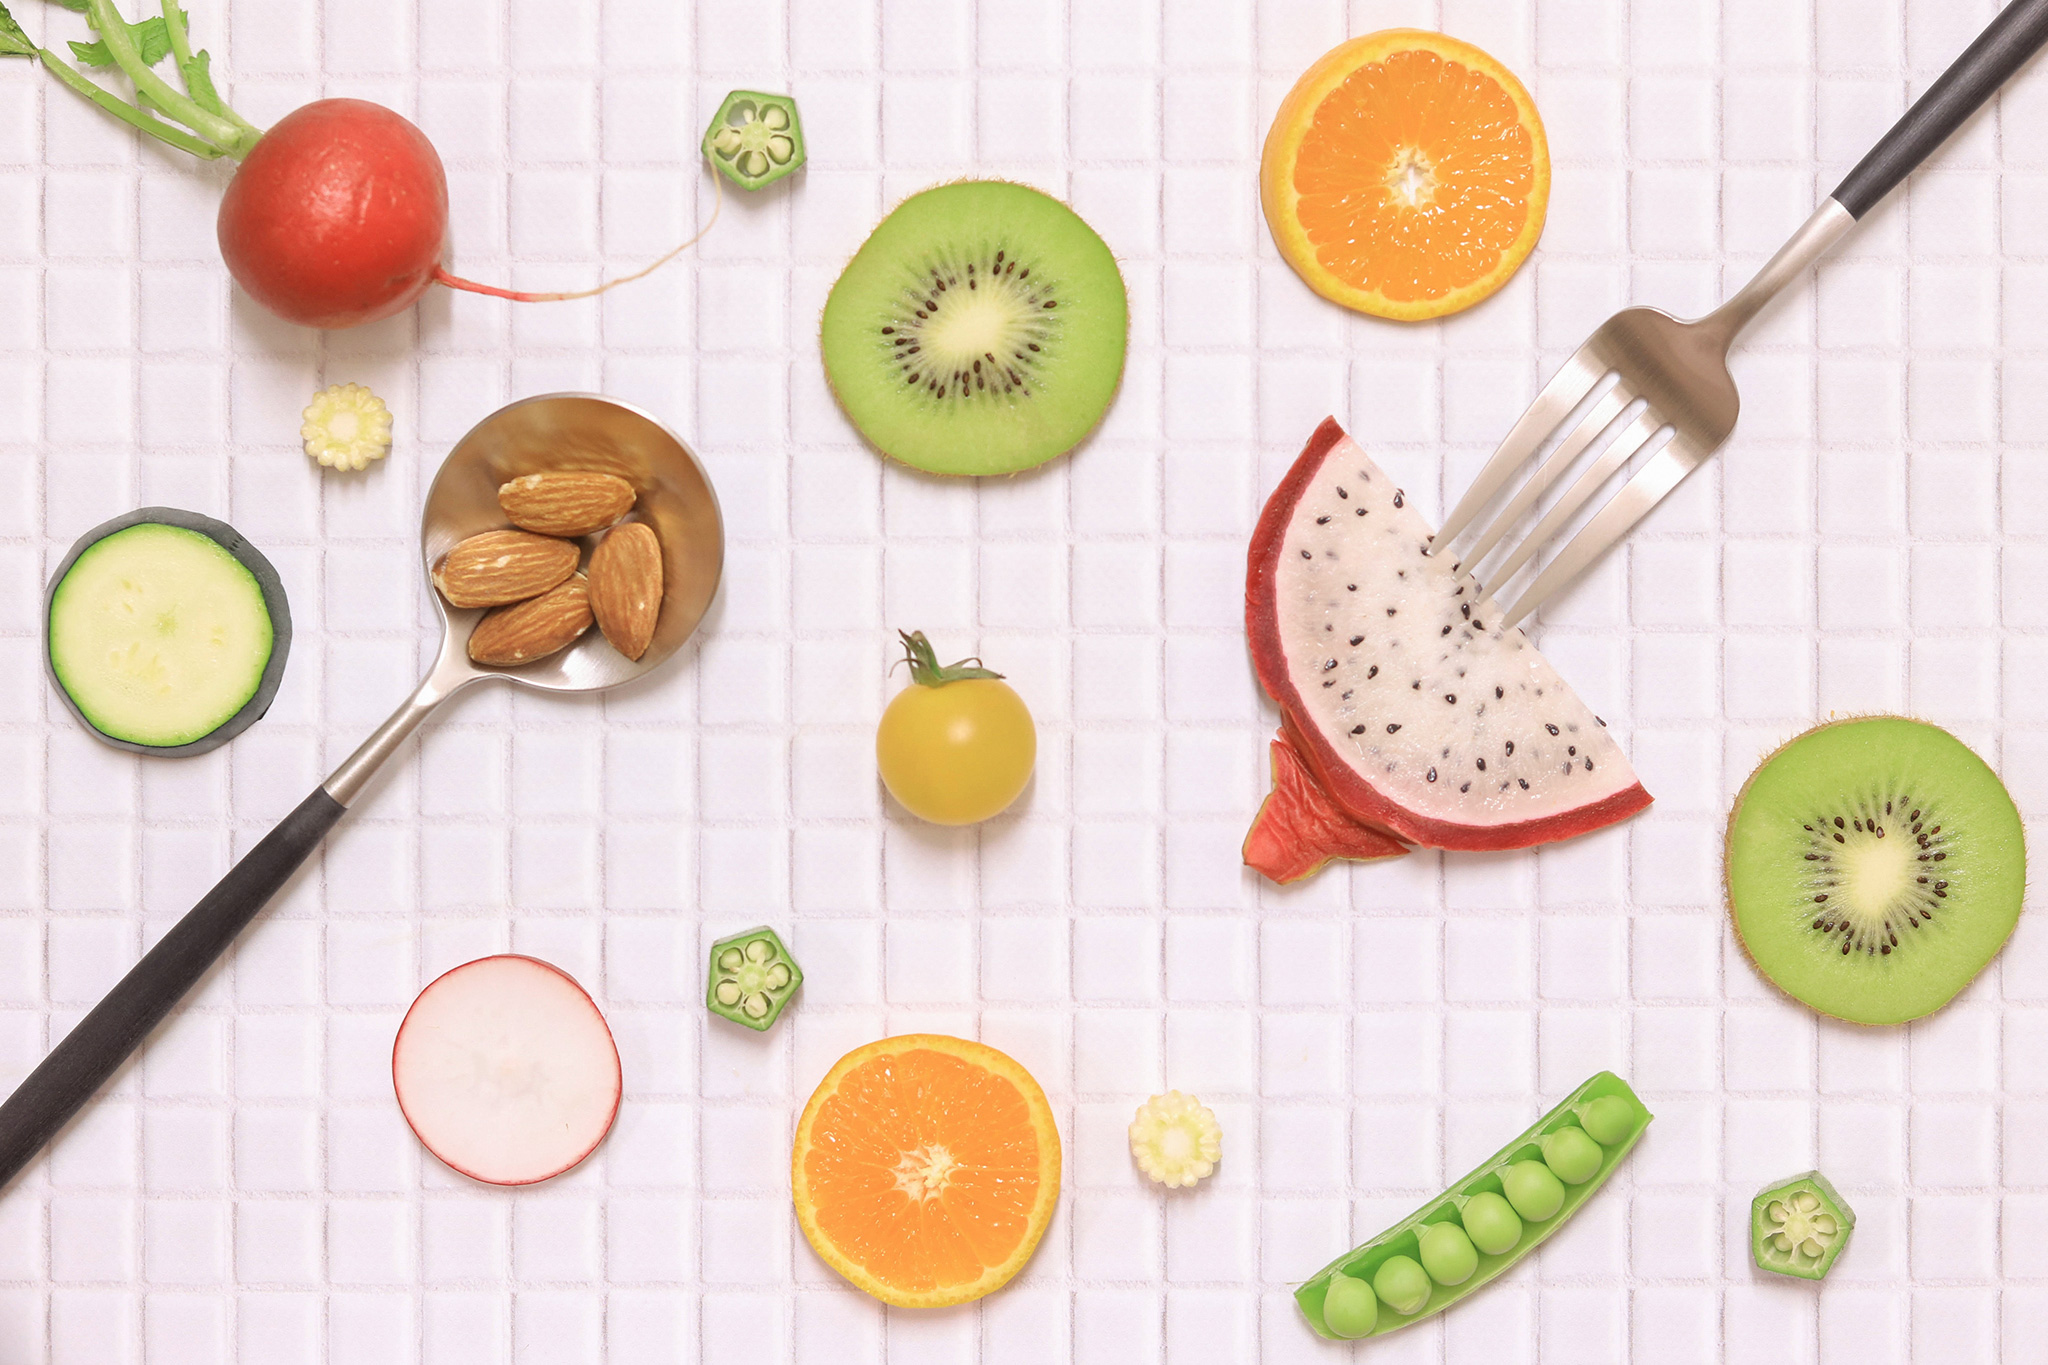 フルーツや野菜をオシャレに並べた様子のフリー画像 おしゃれなフリー写真素材 Girly Drop